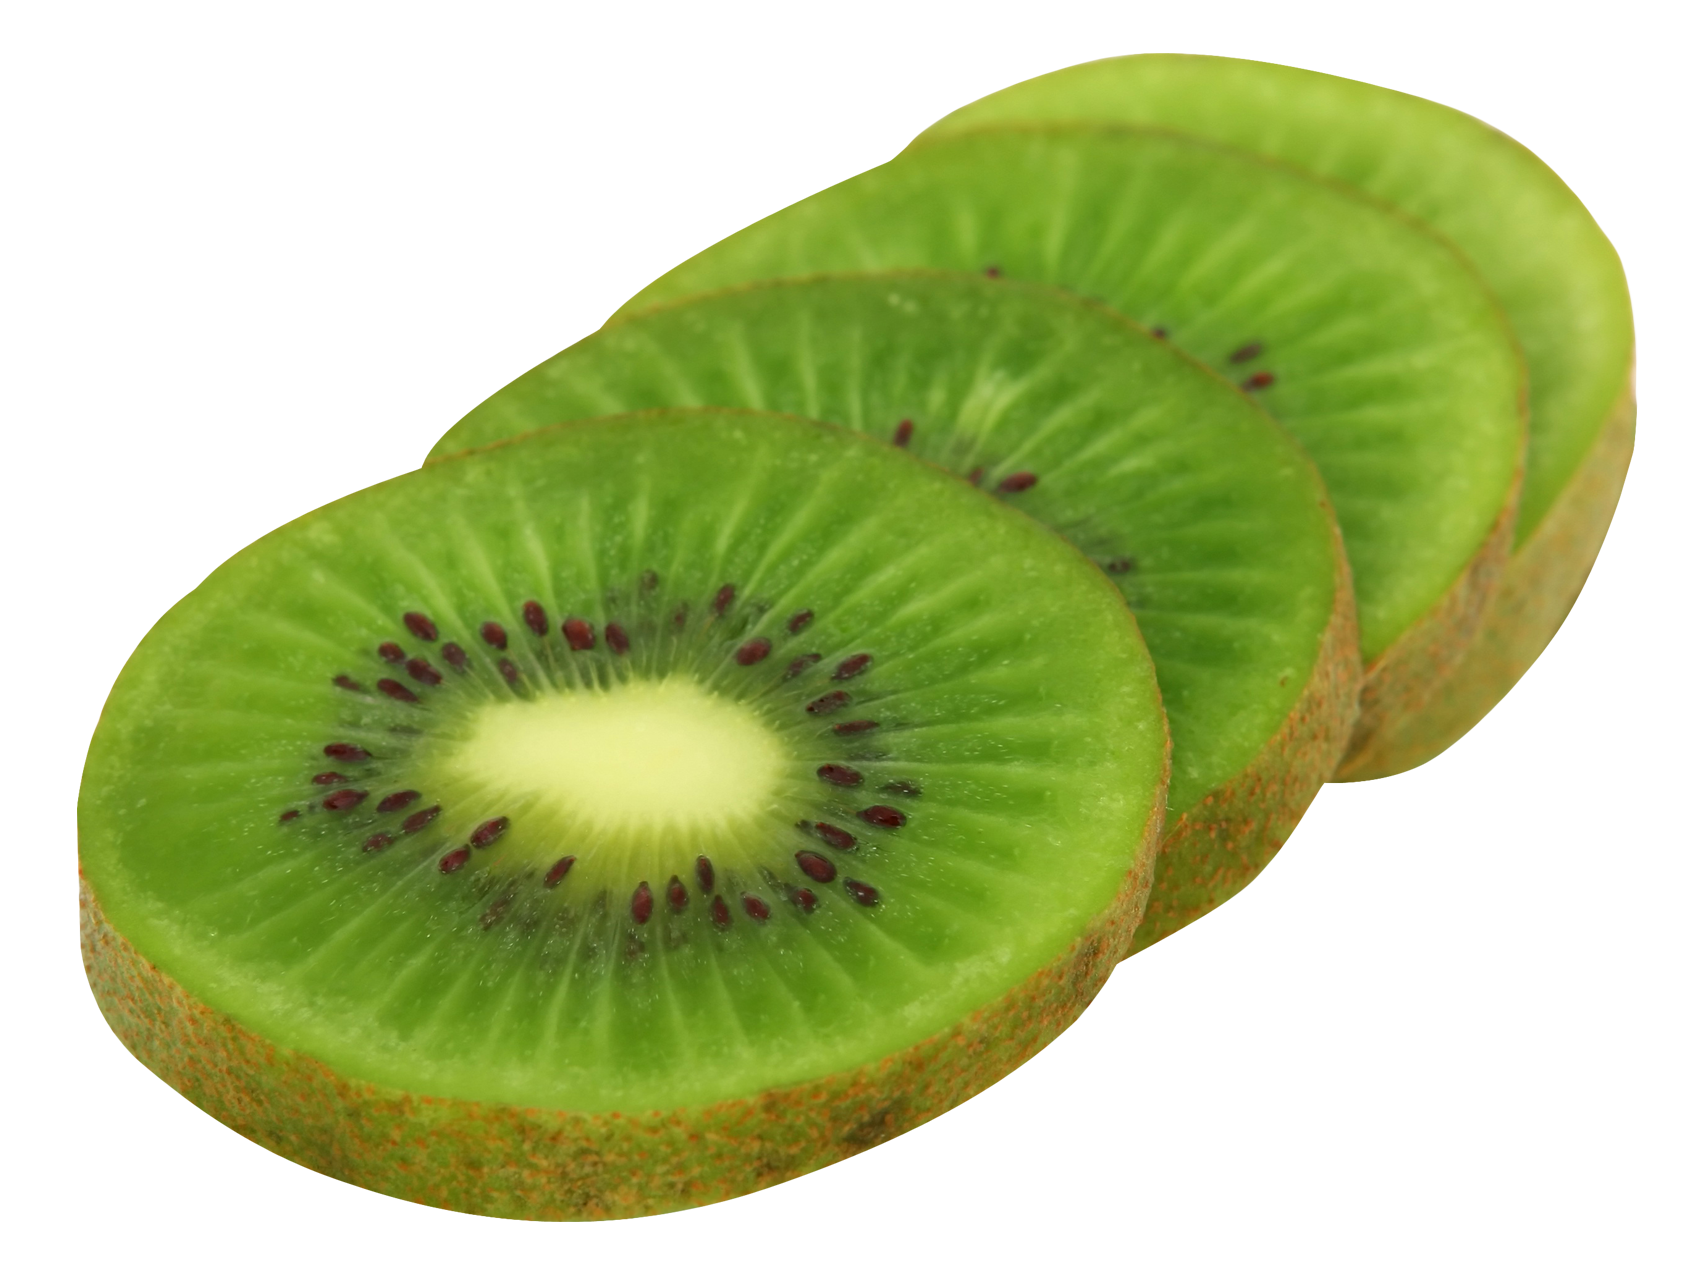 kiwi, kiwifruit slices png image pngpix #24970